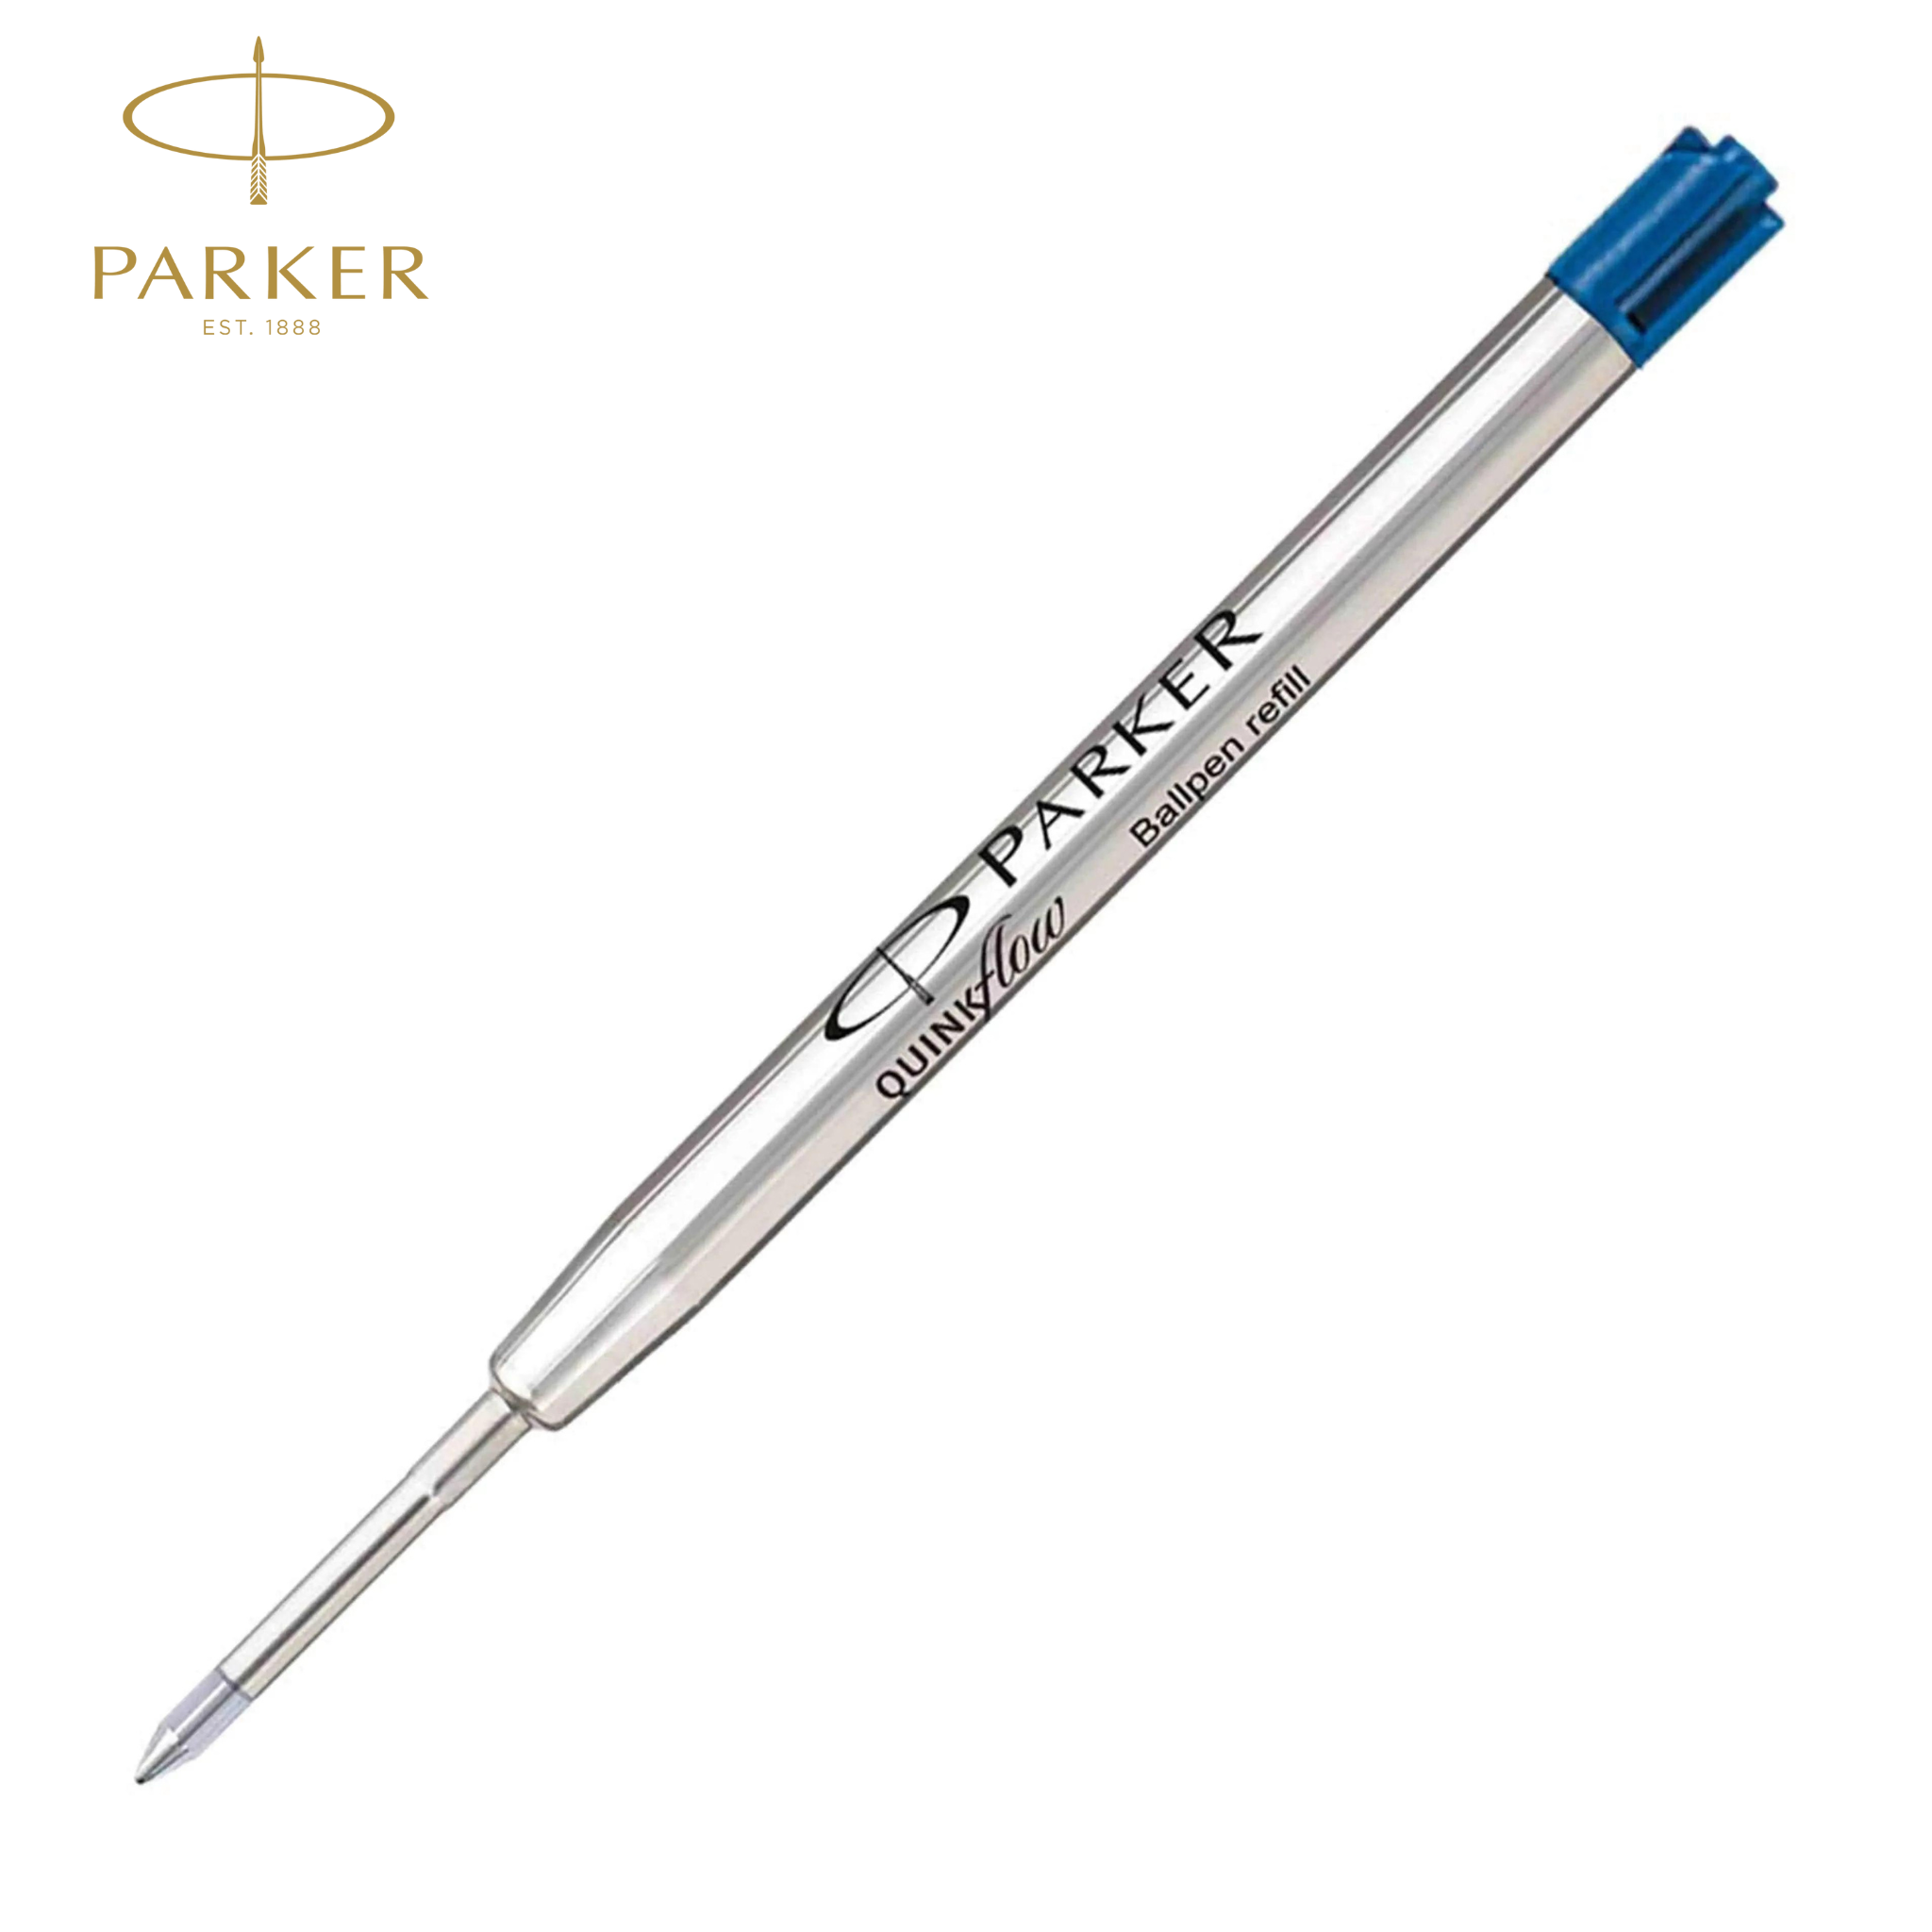 Parker Ball Pen Refill Medium Blue